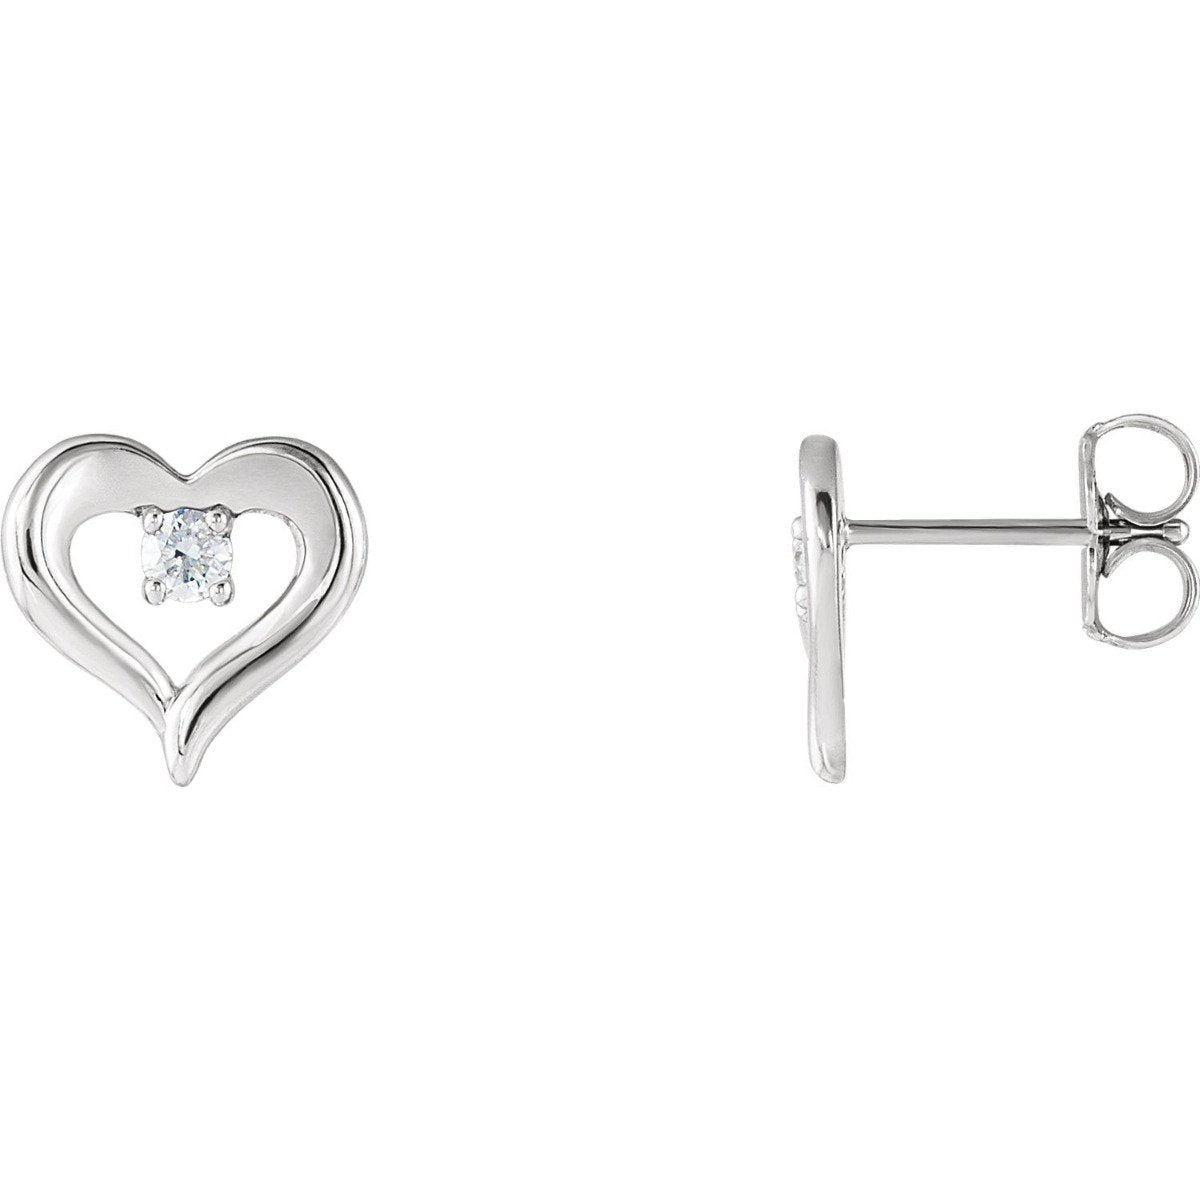 1/10 CTW Diamond Heart Stud Earrings 14KT Gold / White